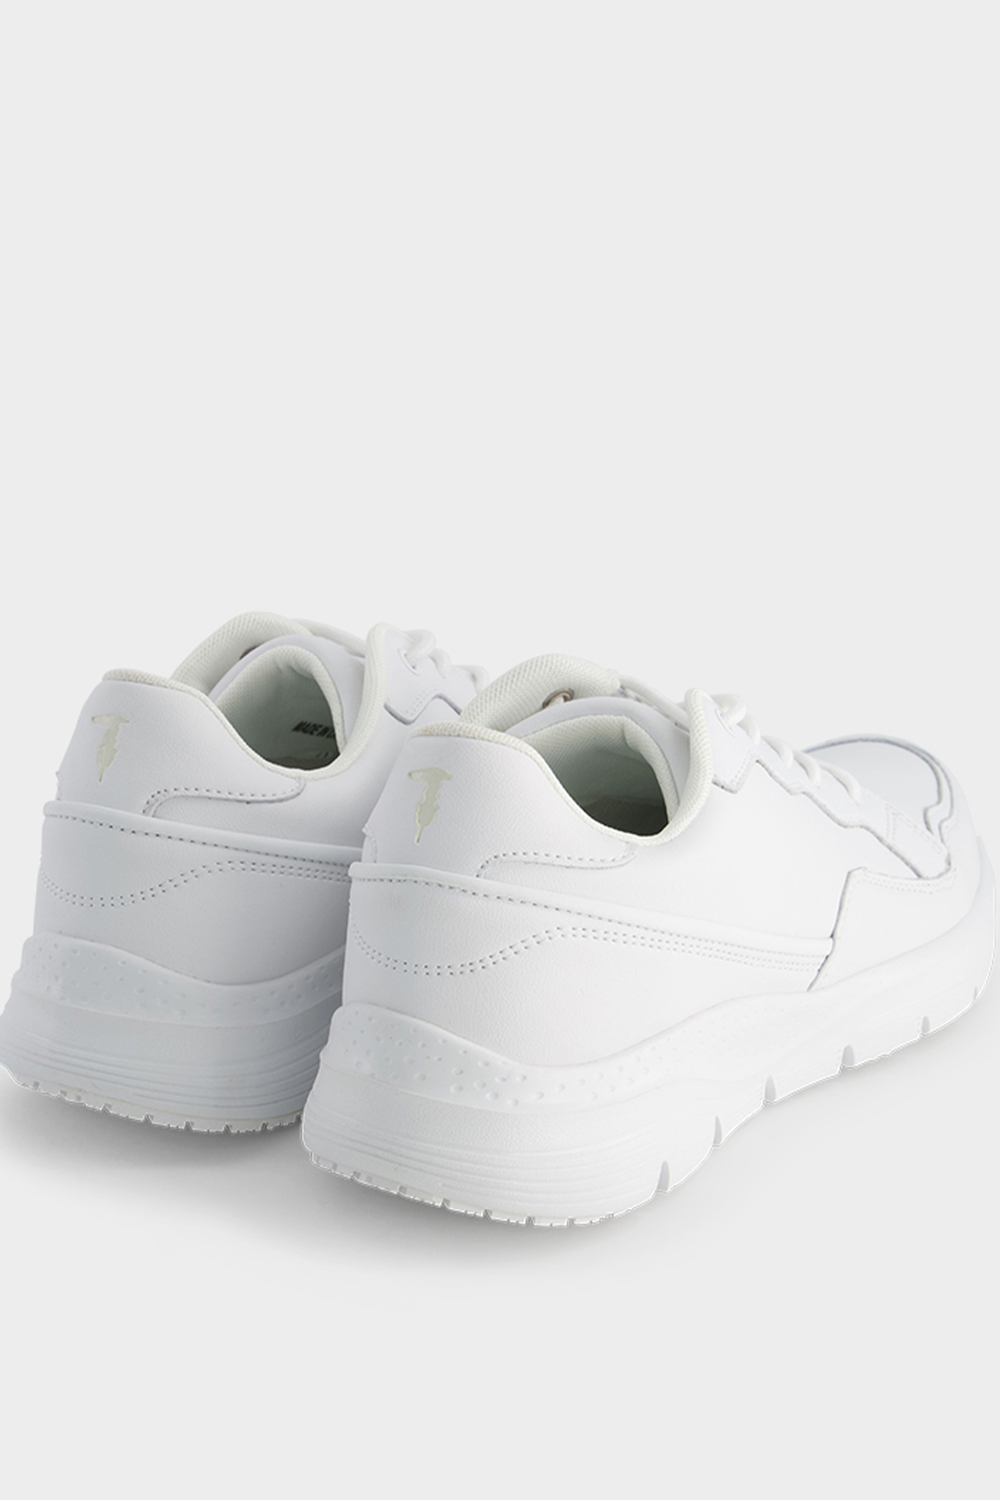 נעלי סניקרס לגברים בצבע לבן